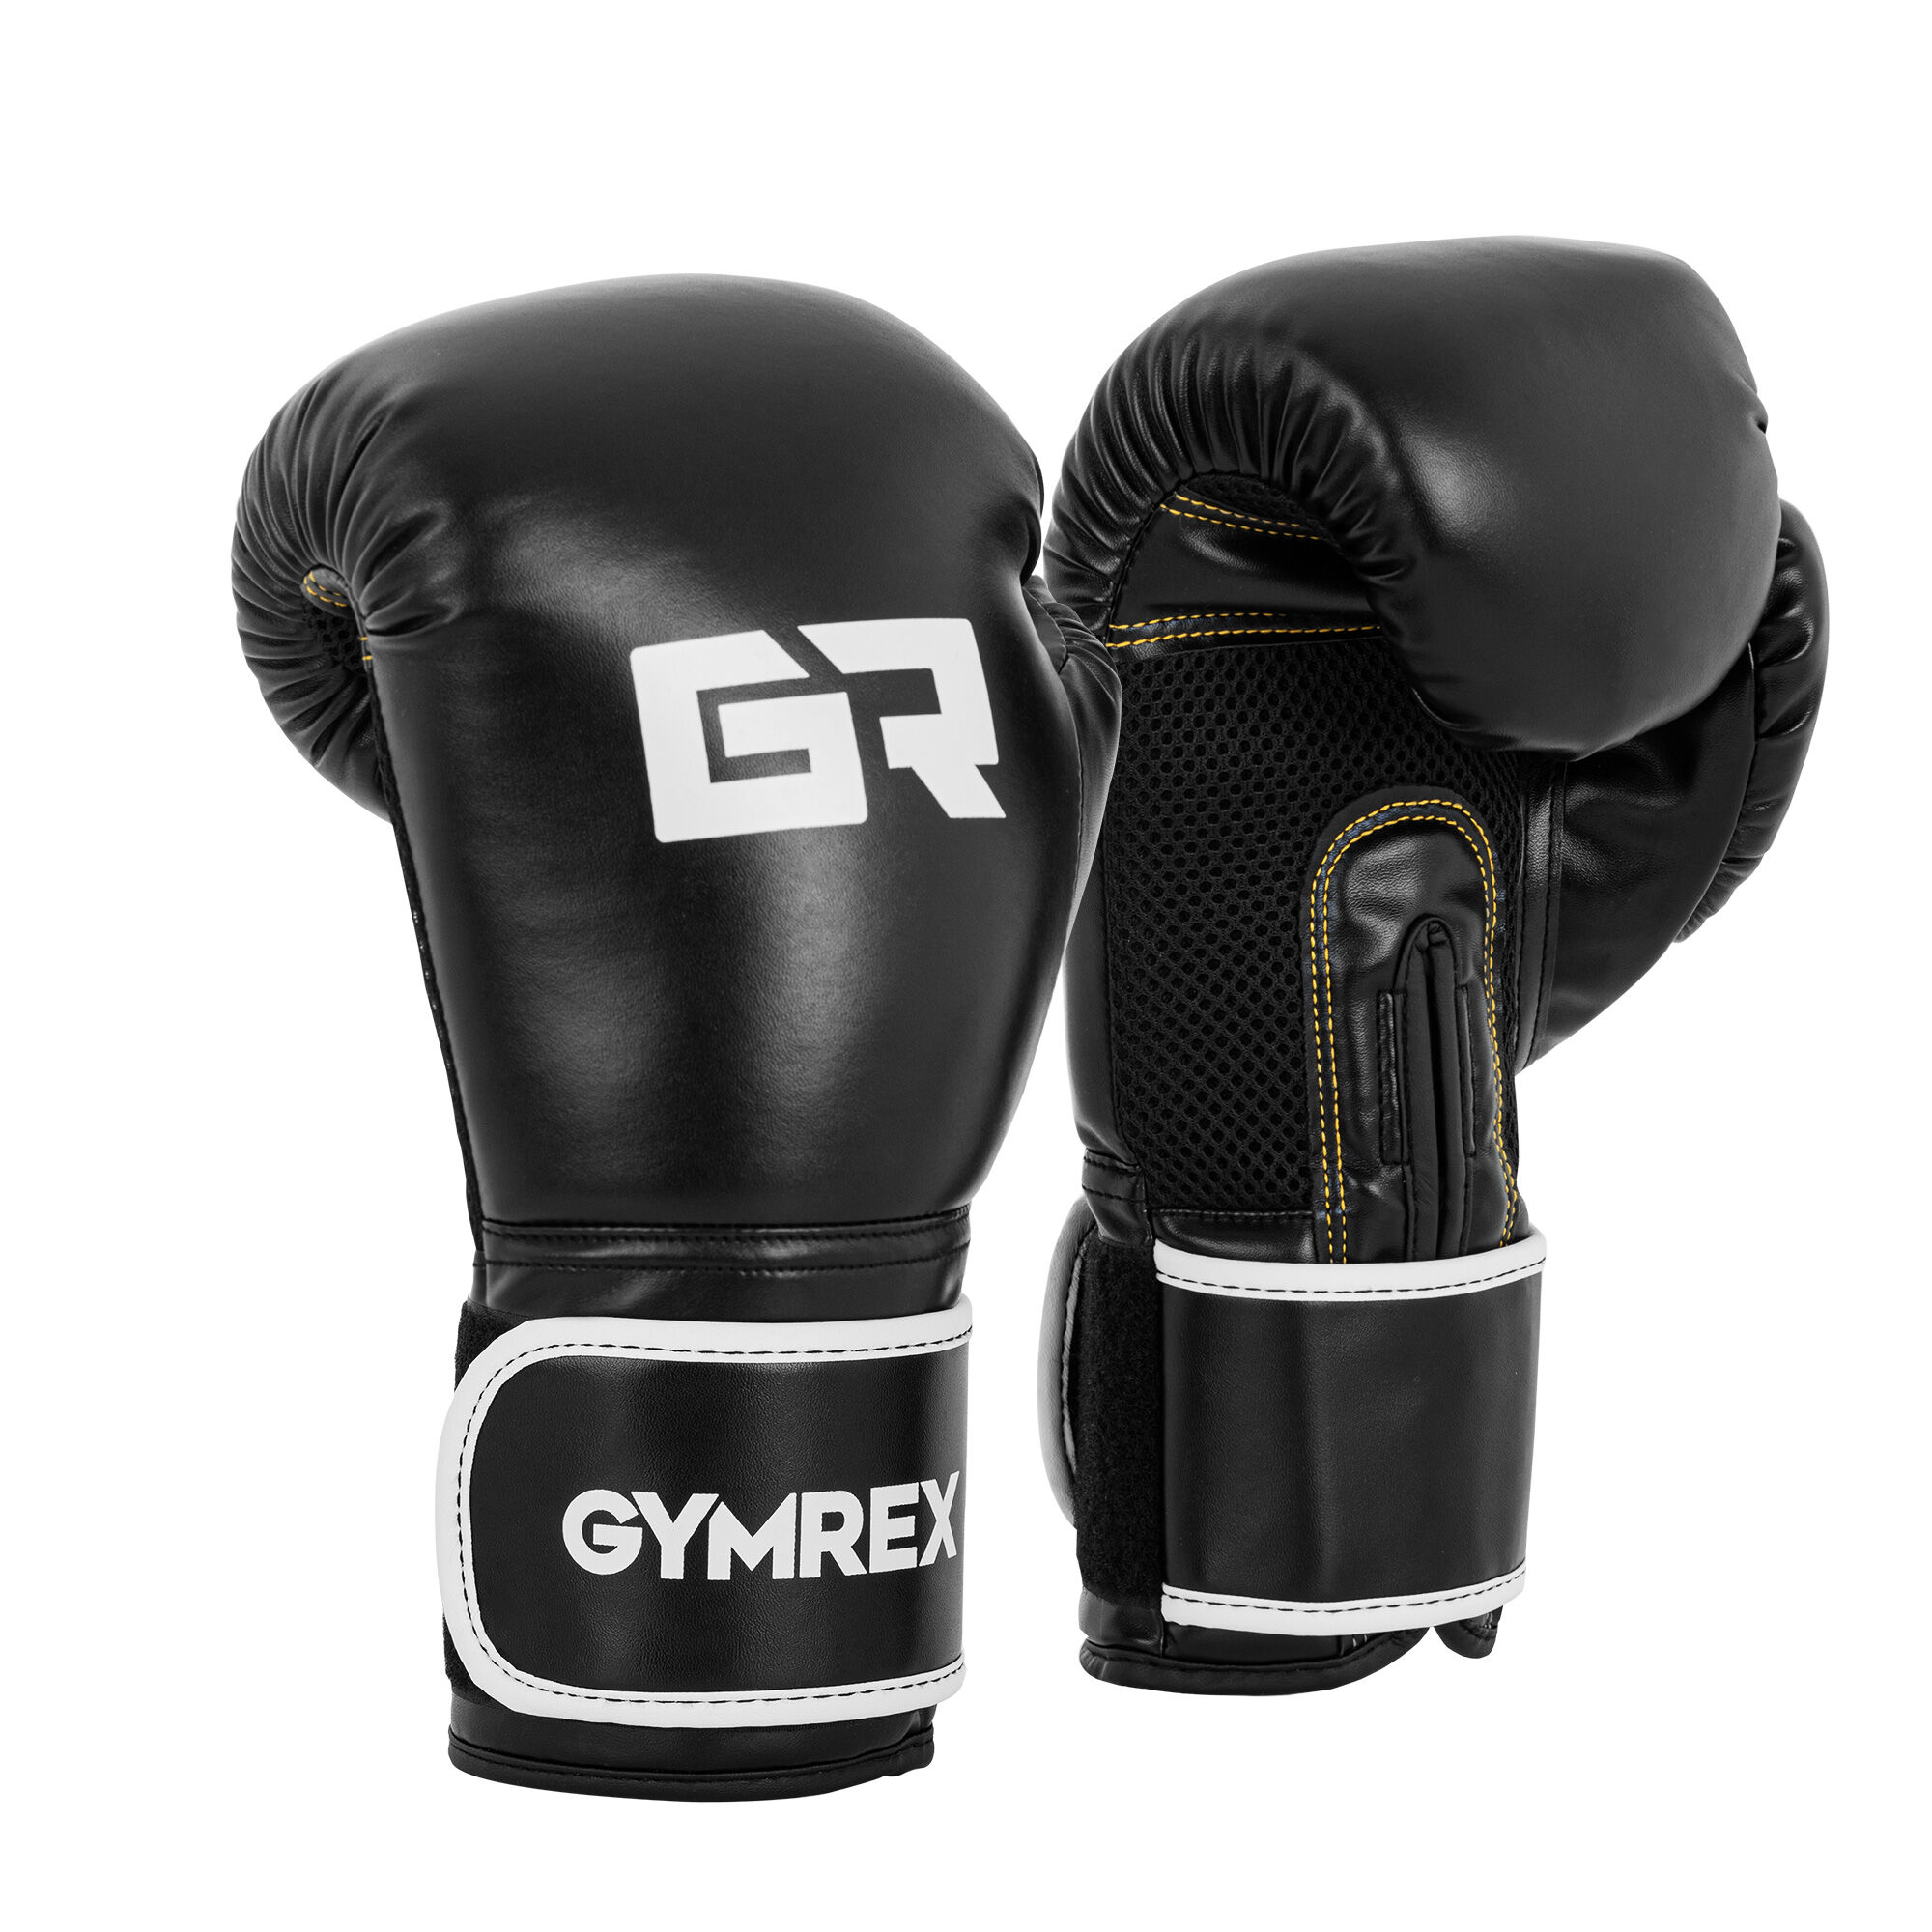 Gymrex Guantoni boxe - 16 oz - rete interna - neri GR-BG 16B